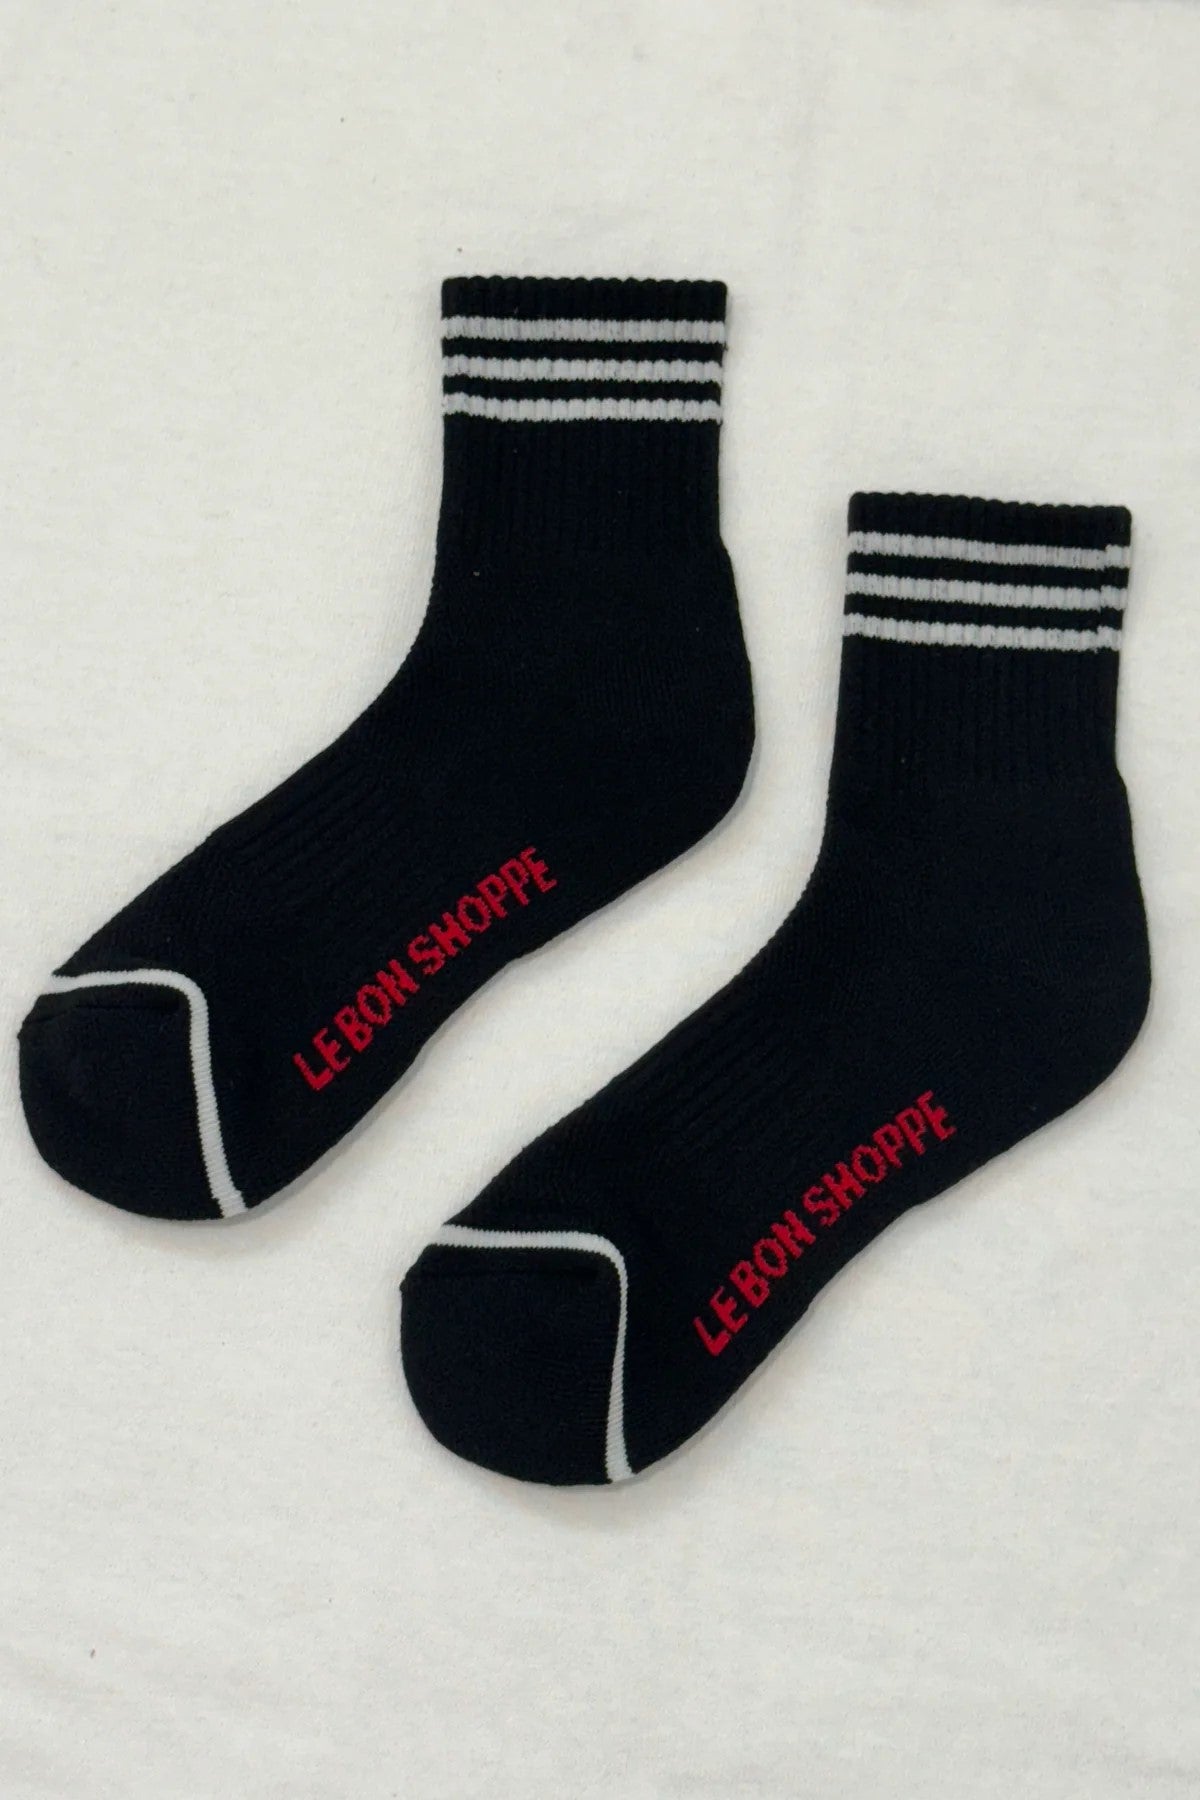 Le Bon - Girlfriend Socks